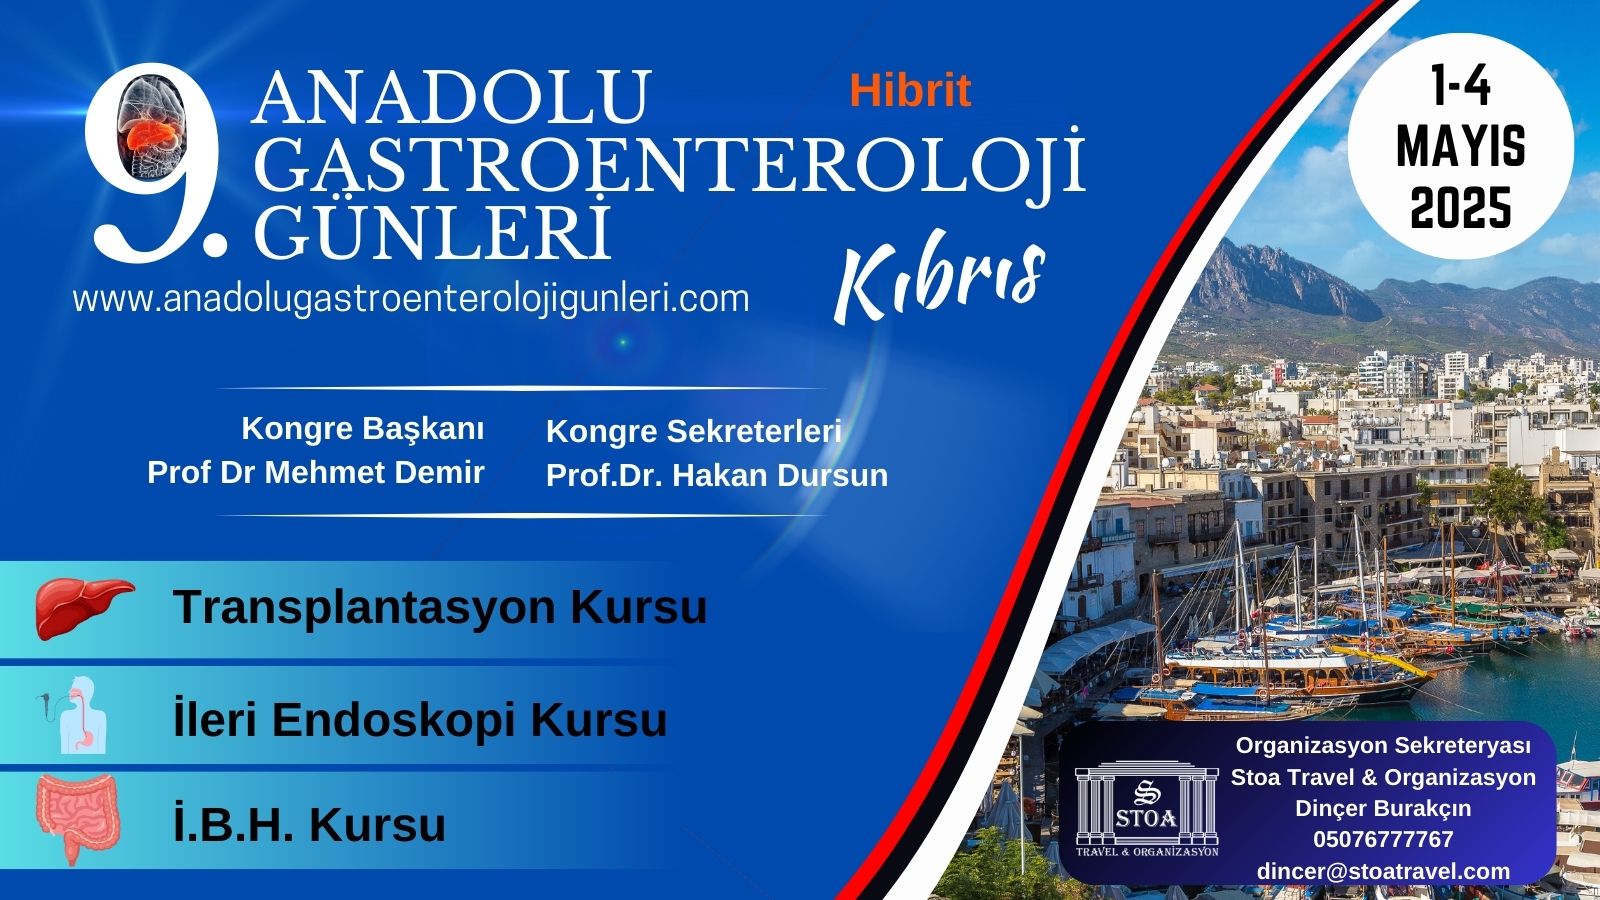 Anadolu Gastroenteroloji Günleri 2025 Kıbrıs